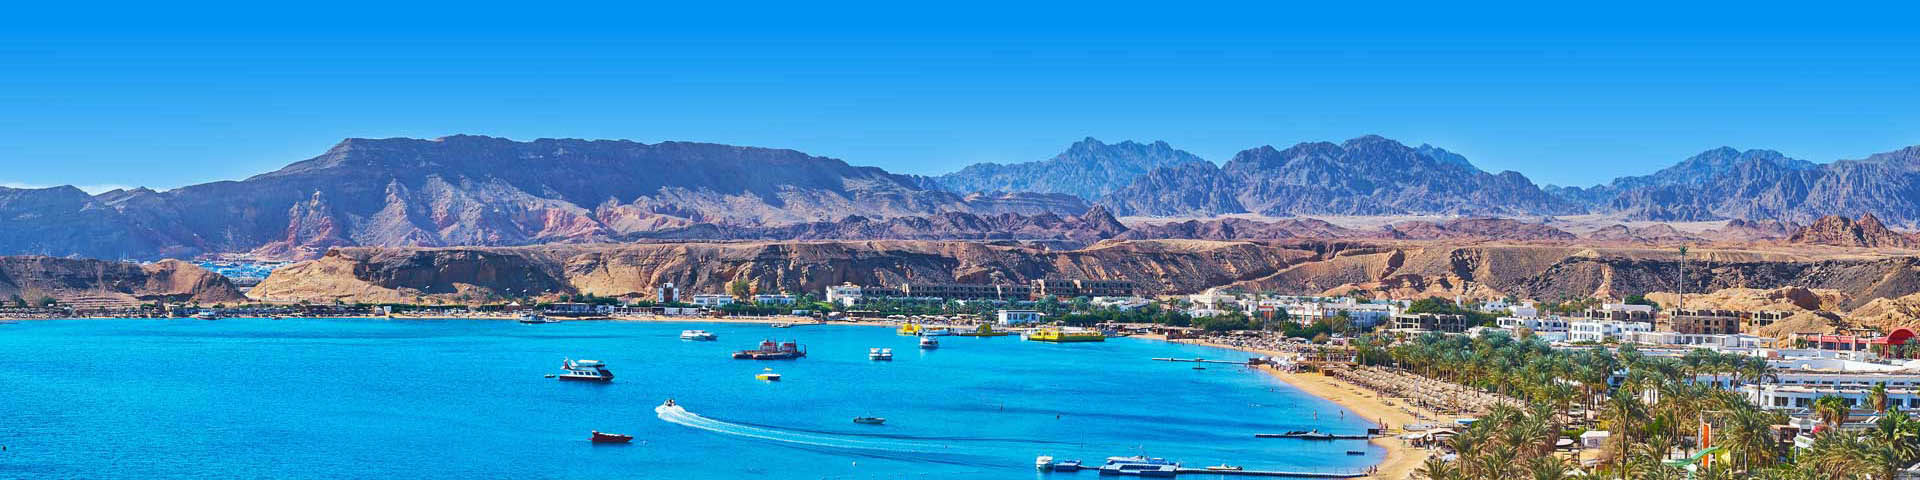 De blauwe zee en bergen bij Sharm el Sheikh